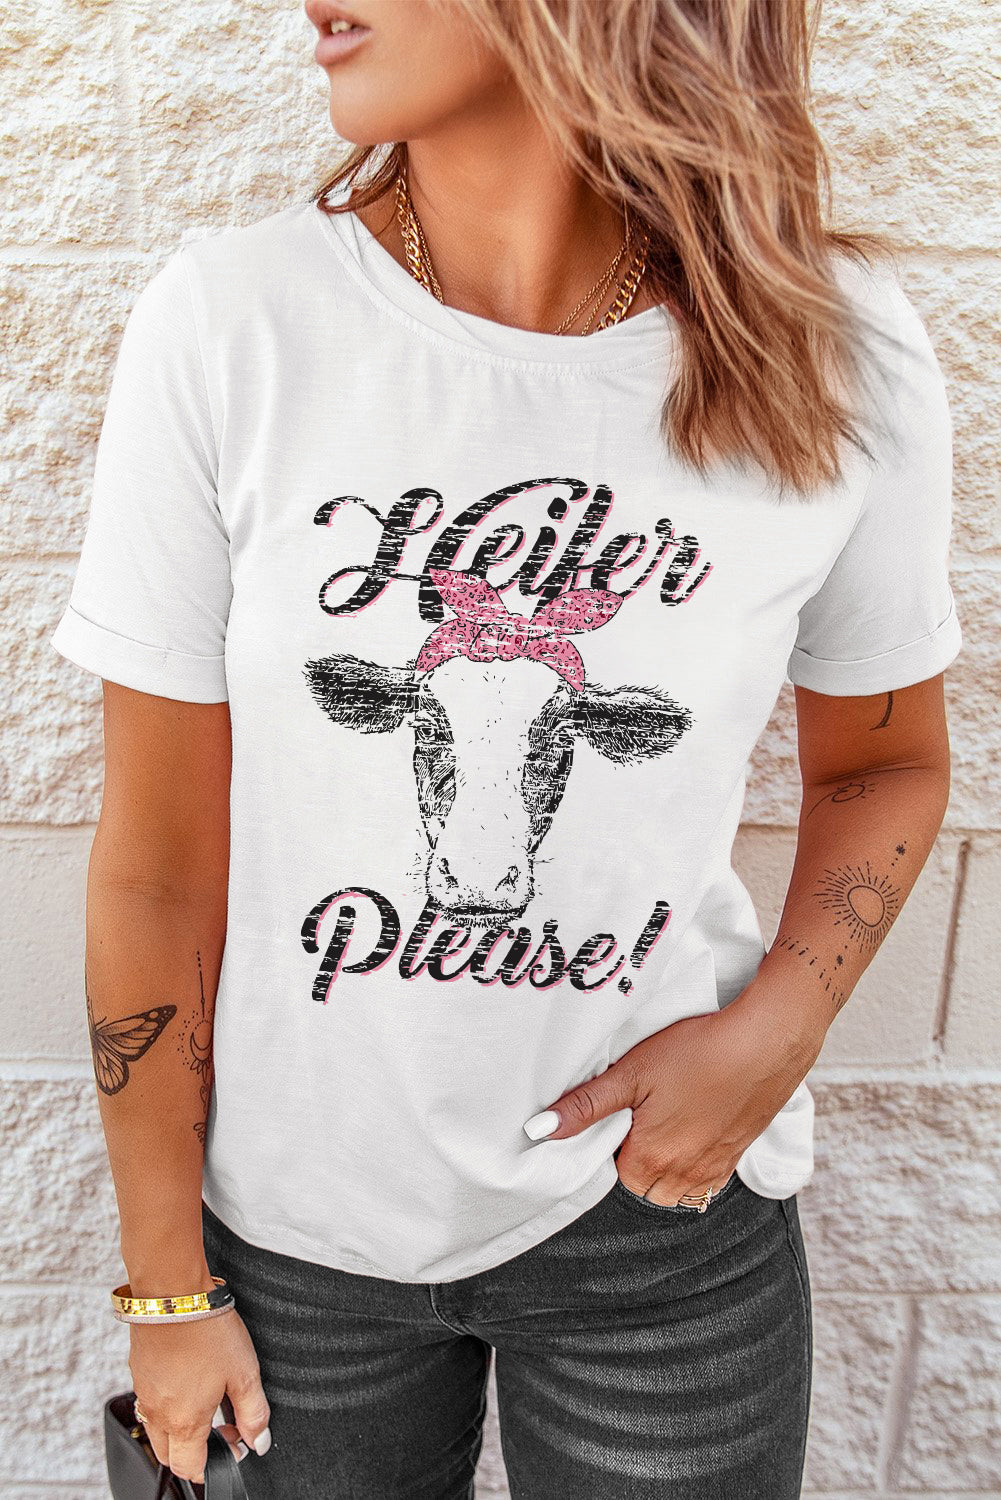 Cute Graphic Print T Shirt